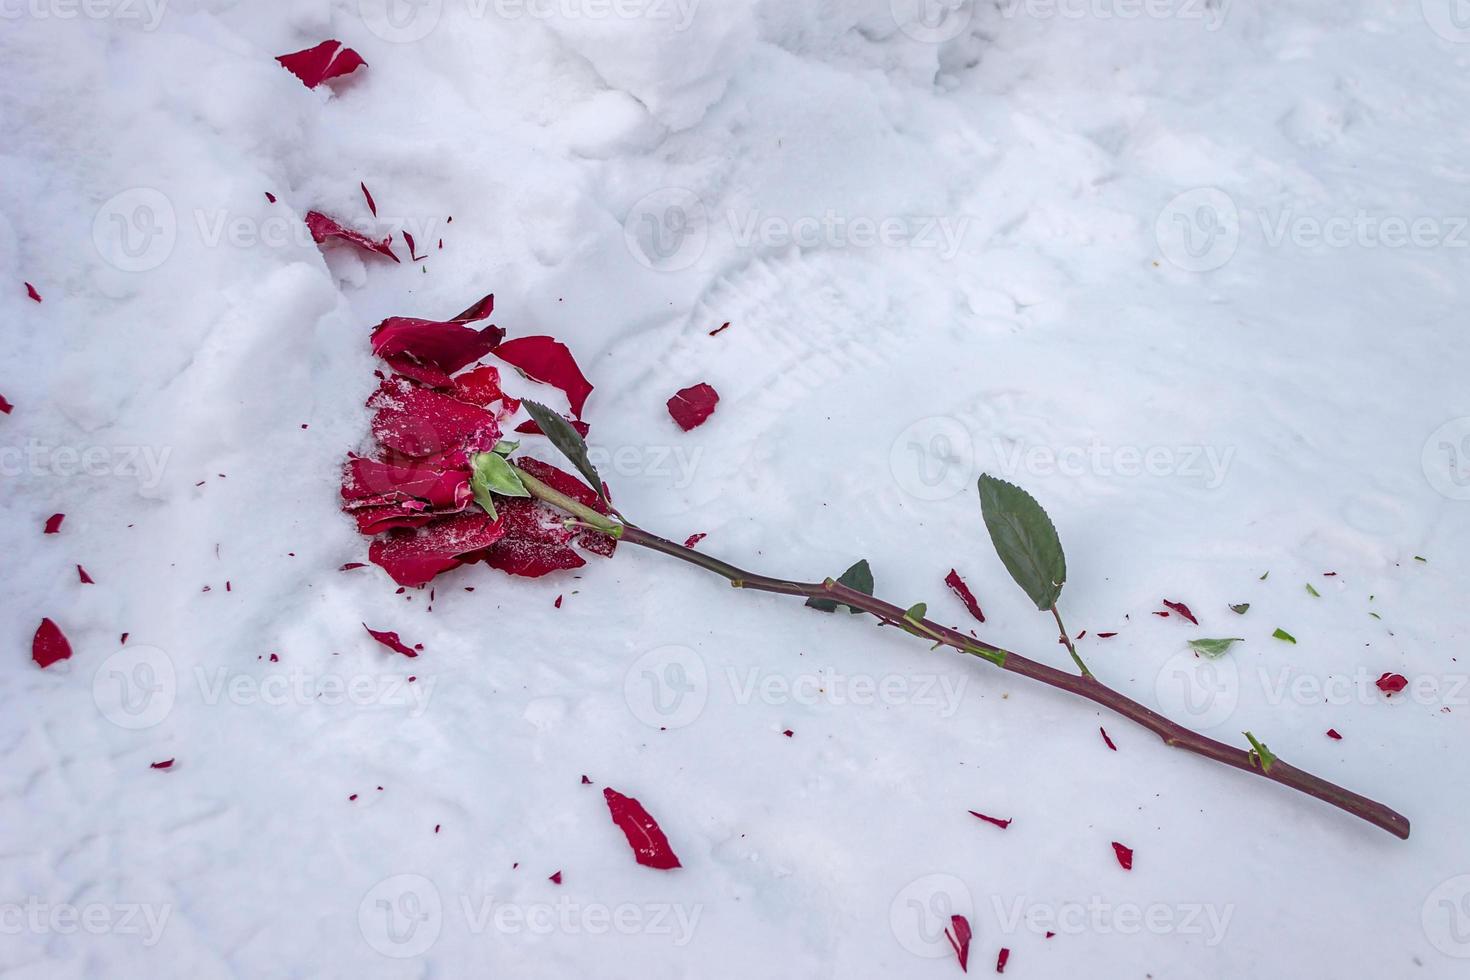 rosa roja congelada y triturada en la nieve fría en la carretera en invierno foto